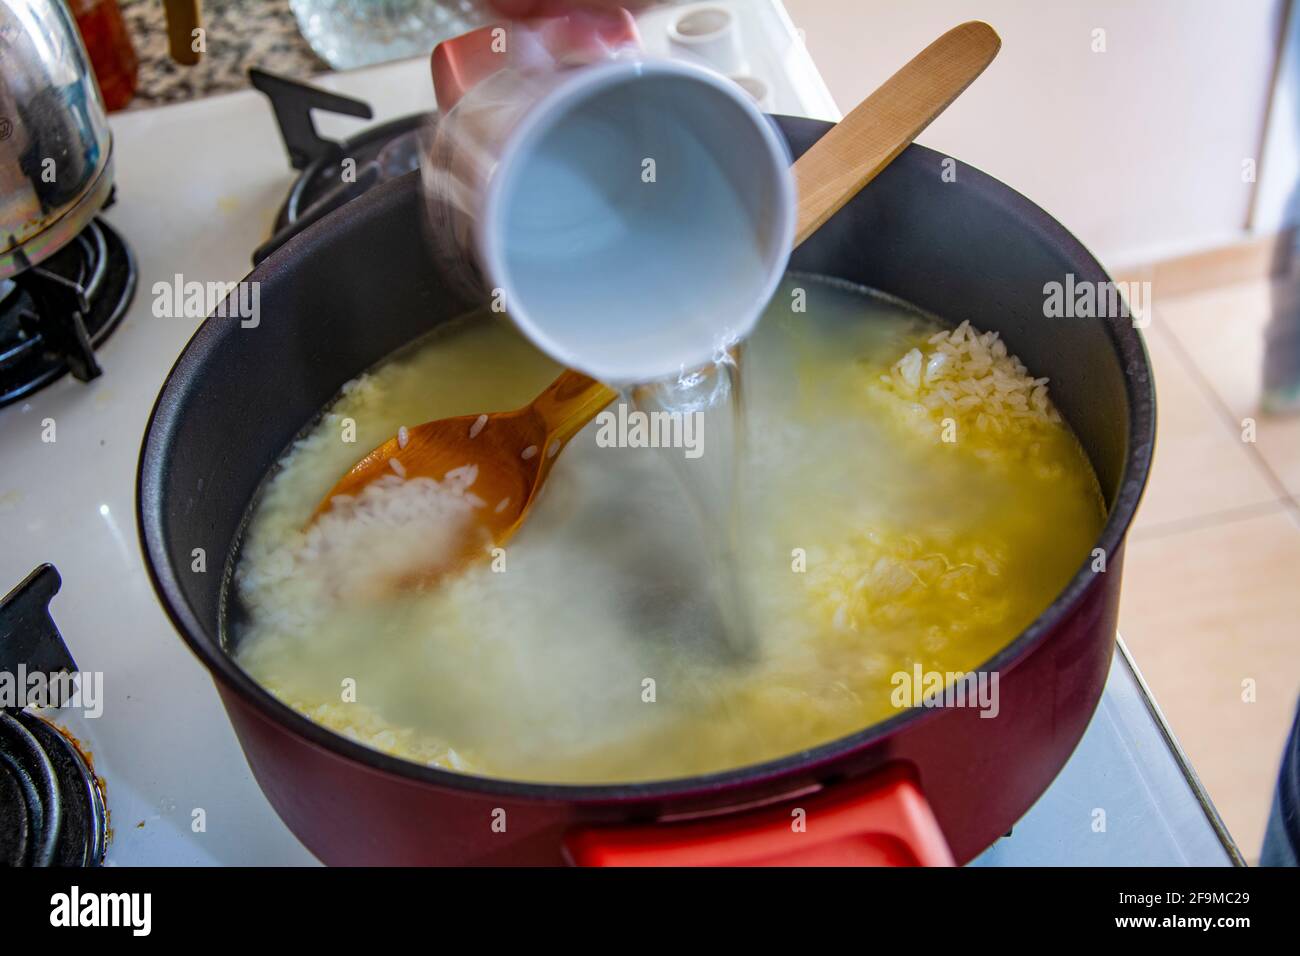 Aggiungendo acqua bollita al riso torrefatto in una pentola Foto Stock